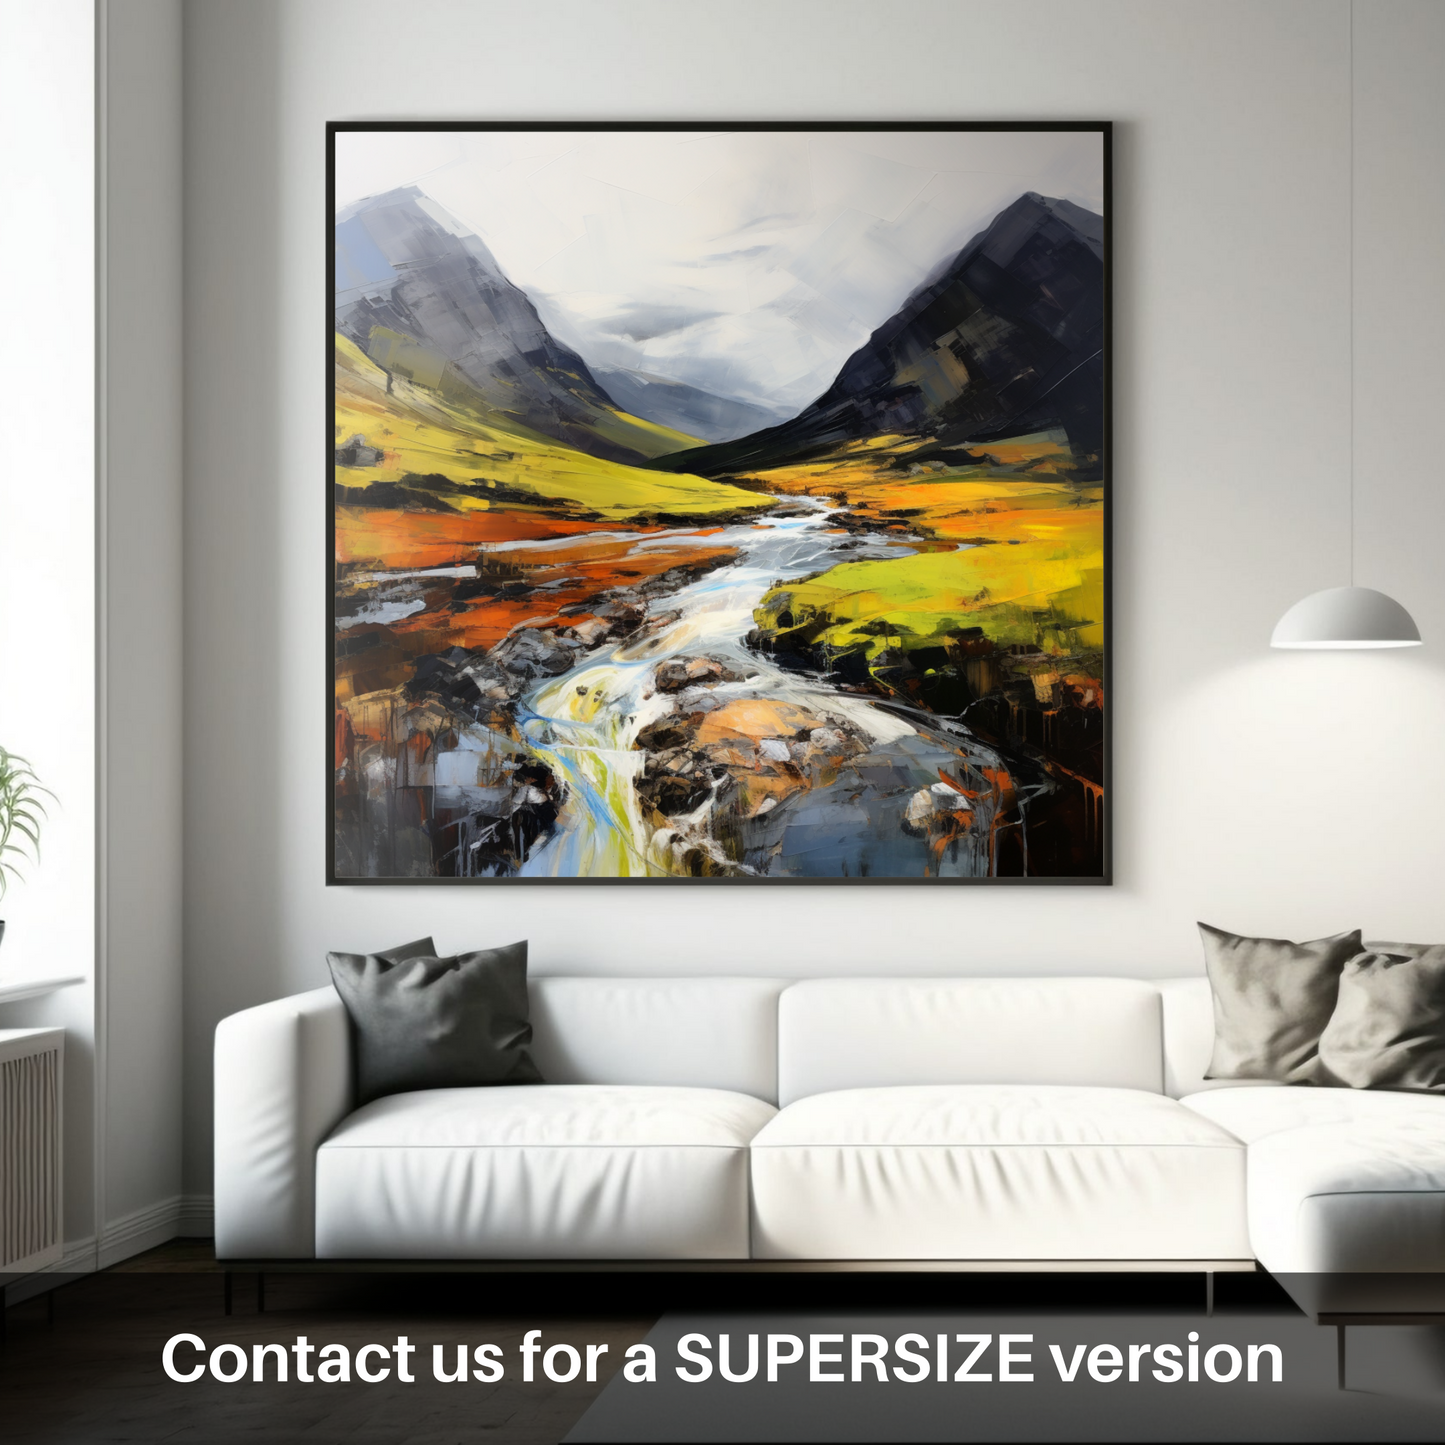 Huge supersize print of Glen Coe, Highlands